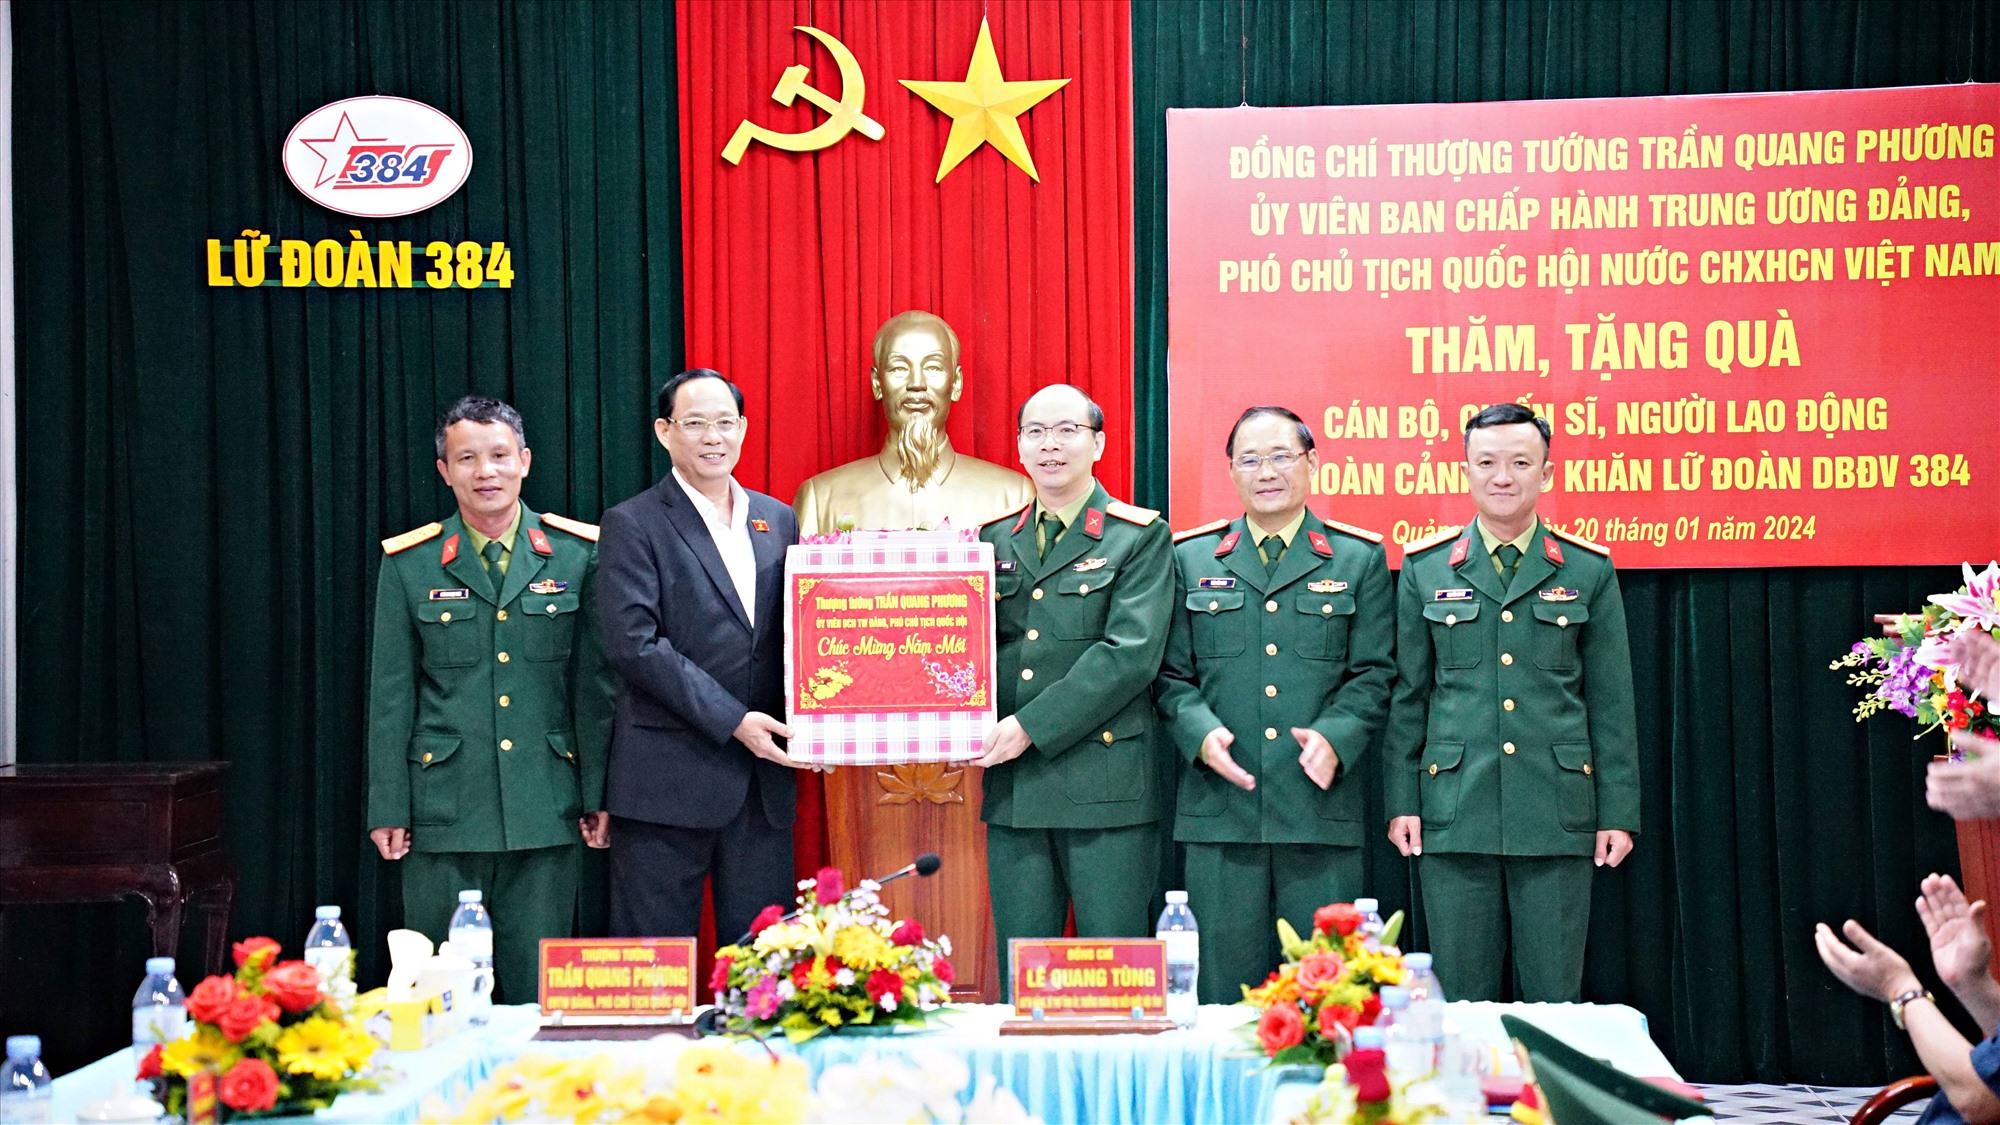 Phó Chủ tịch Quốc hội Trần Quang Phương tặng quà cho Lữ đoàn 384 - Ảnh: L.A